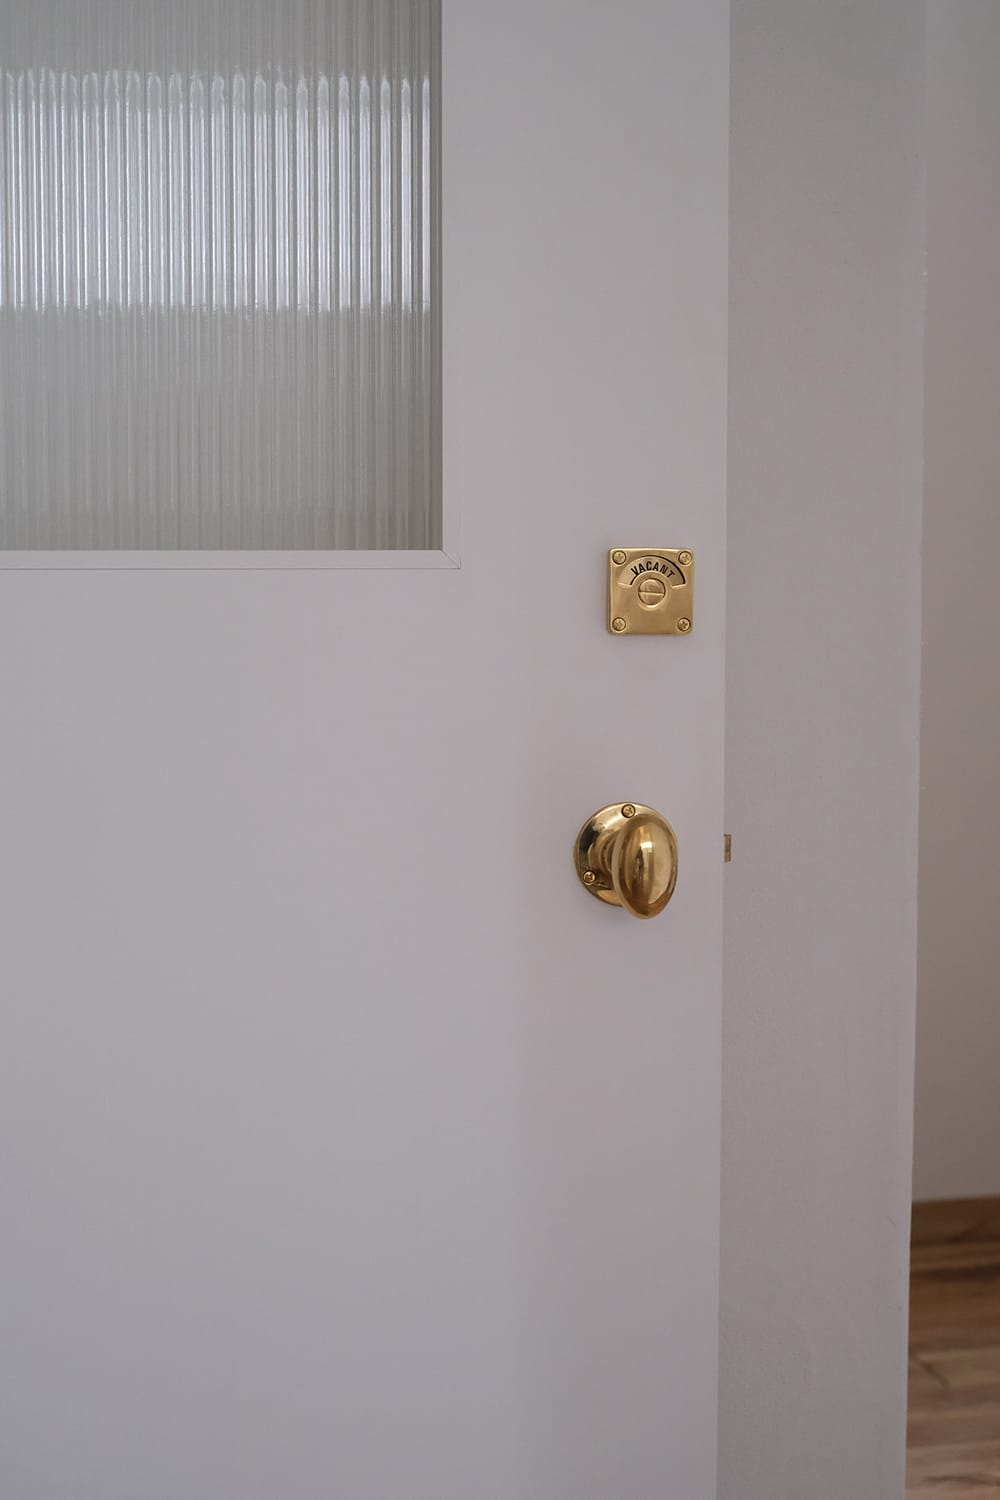 真鍮ドアノブと表示錠と縦縞モールガラスの白いドアは白い塗り壁と同化する